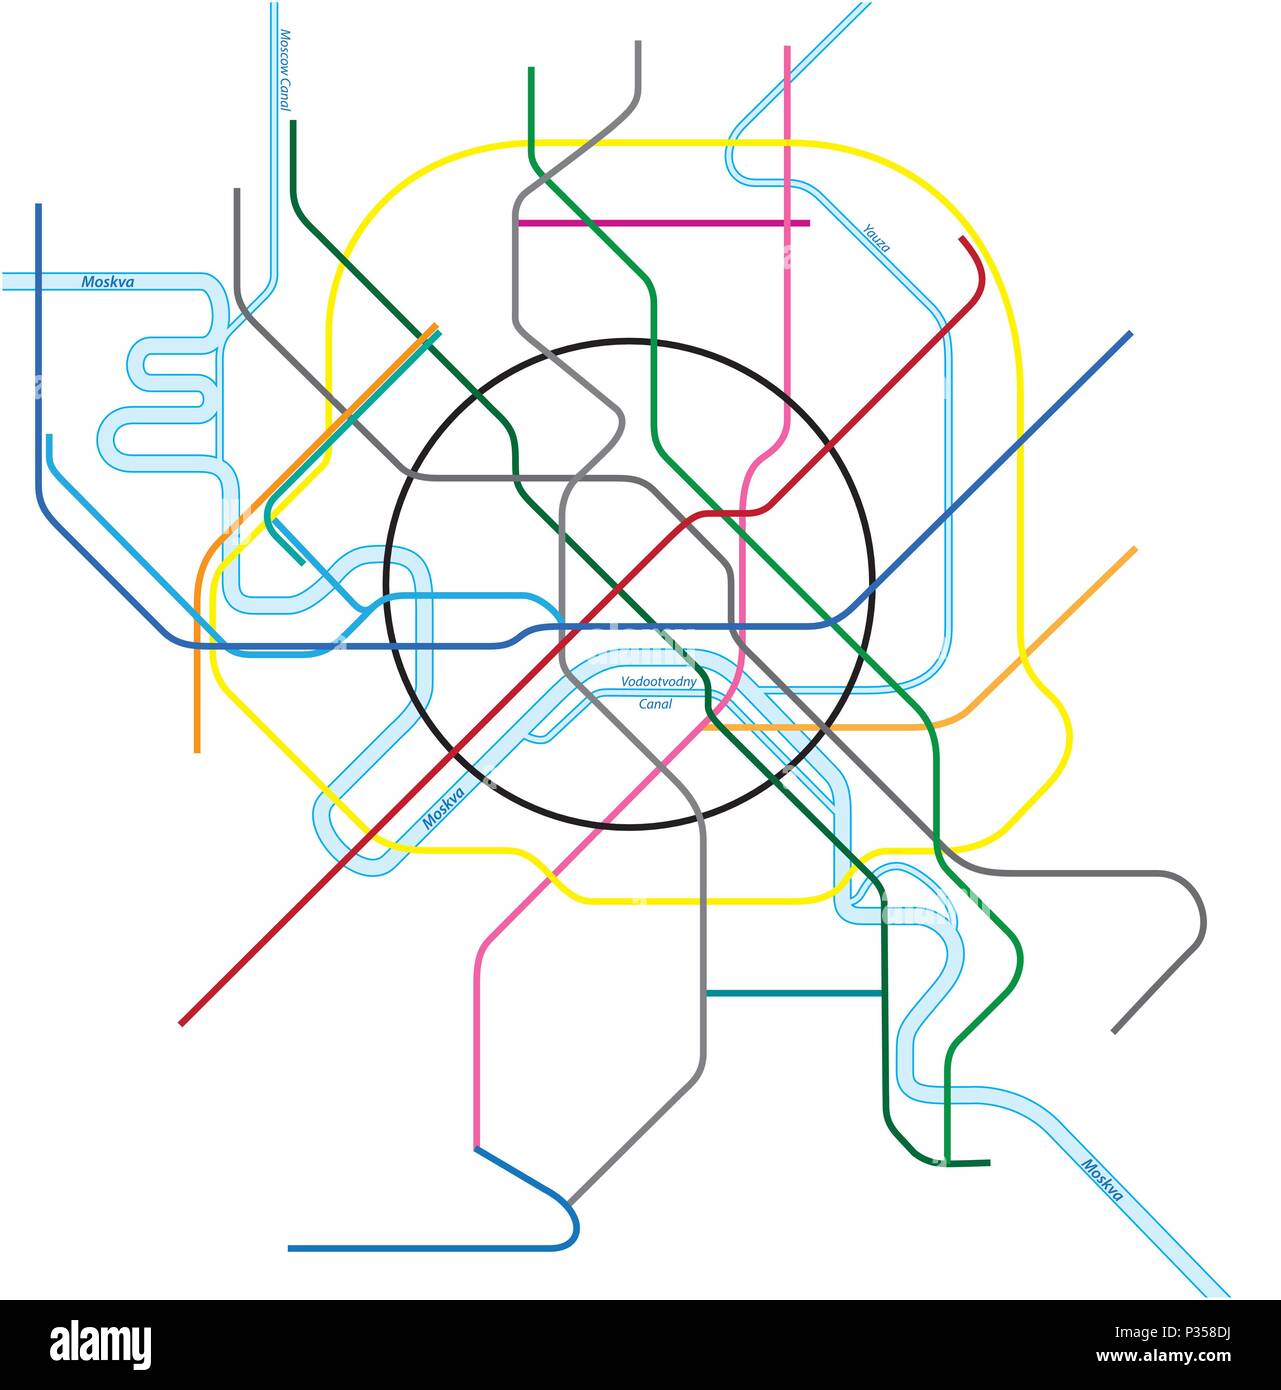 Metro colorata mappa vettoriale di Mosca, Russia Illustrazione Vettoriale